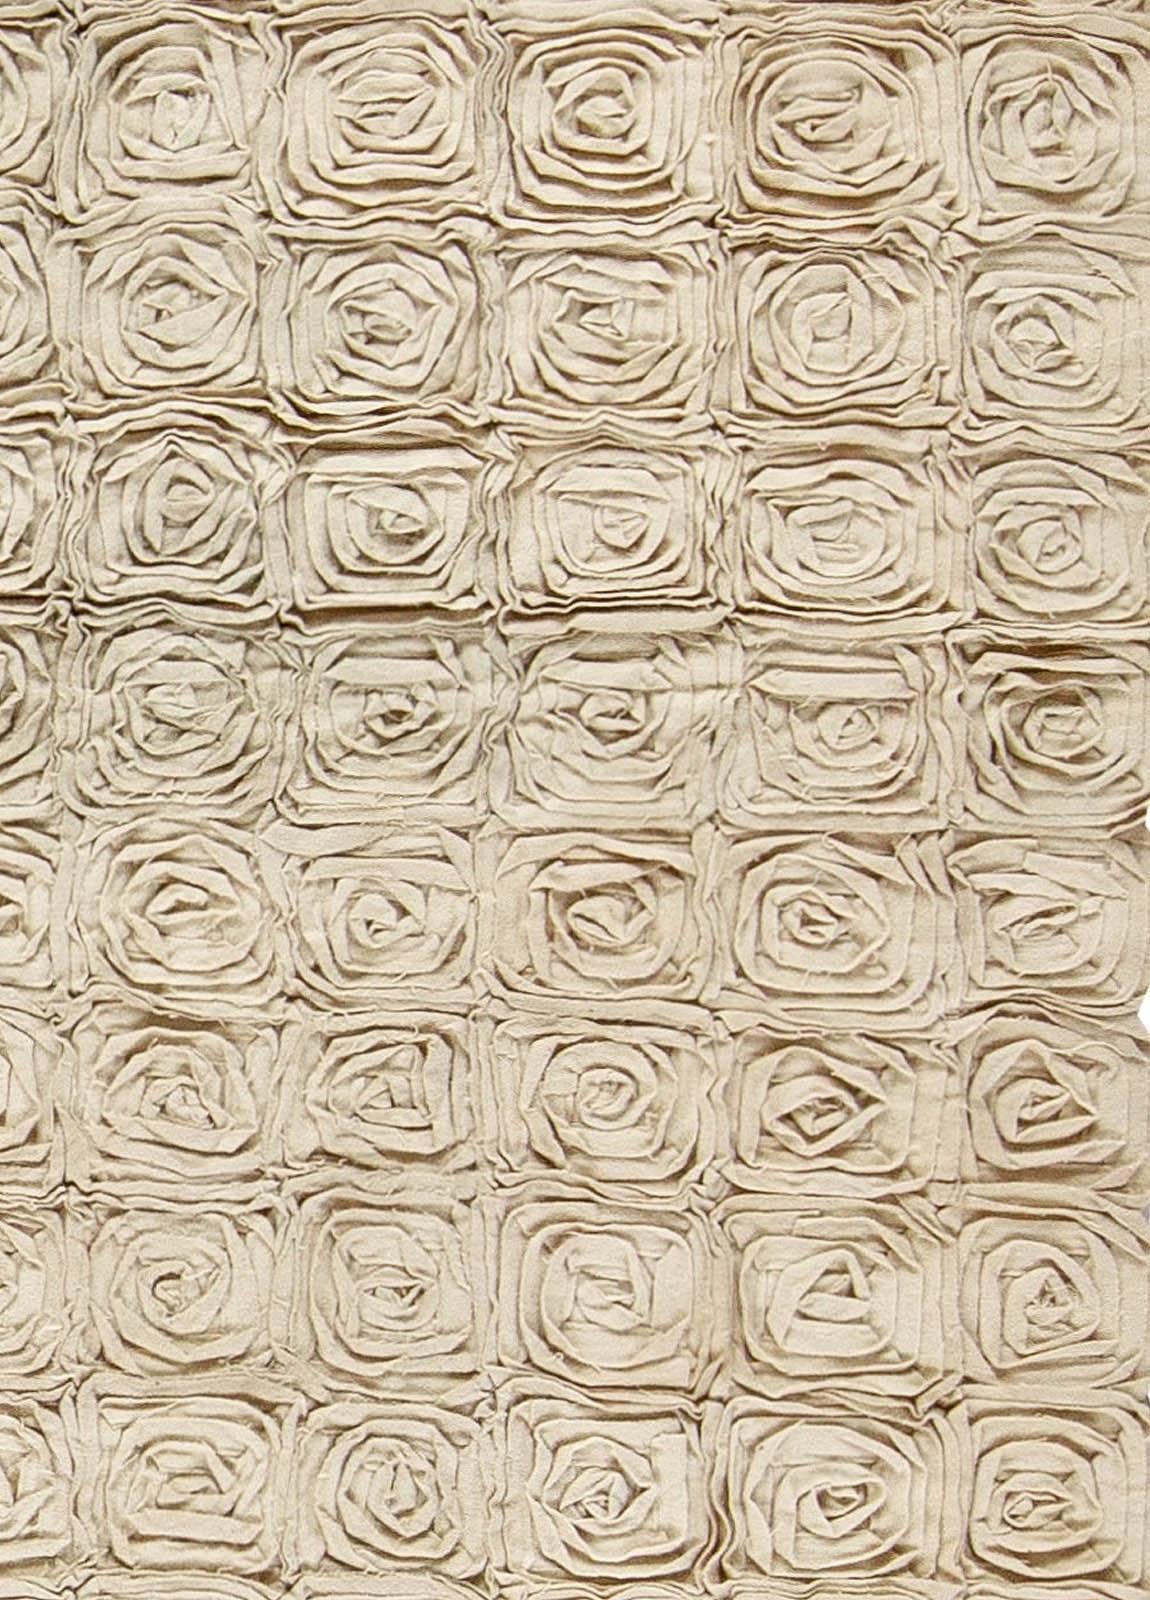 Moderner floraler handgefertigter Teppich von Doris Leslie Blau.
Größe: 9'4